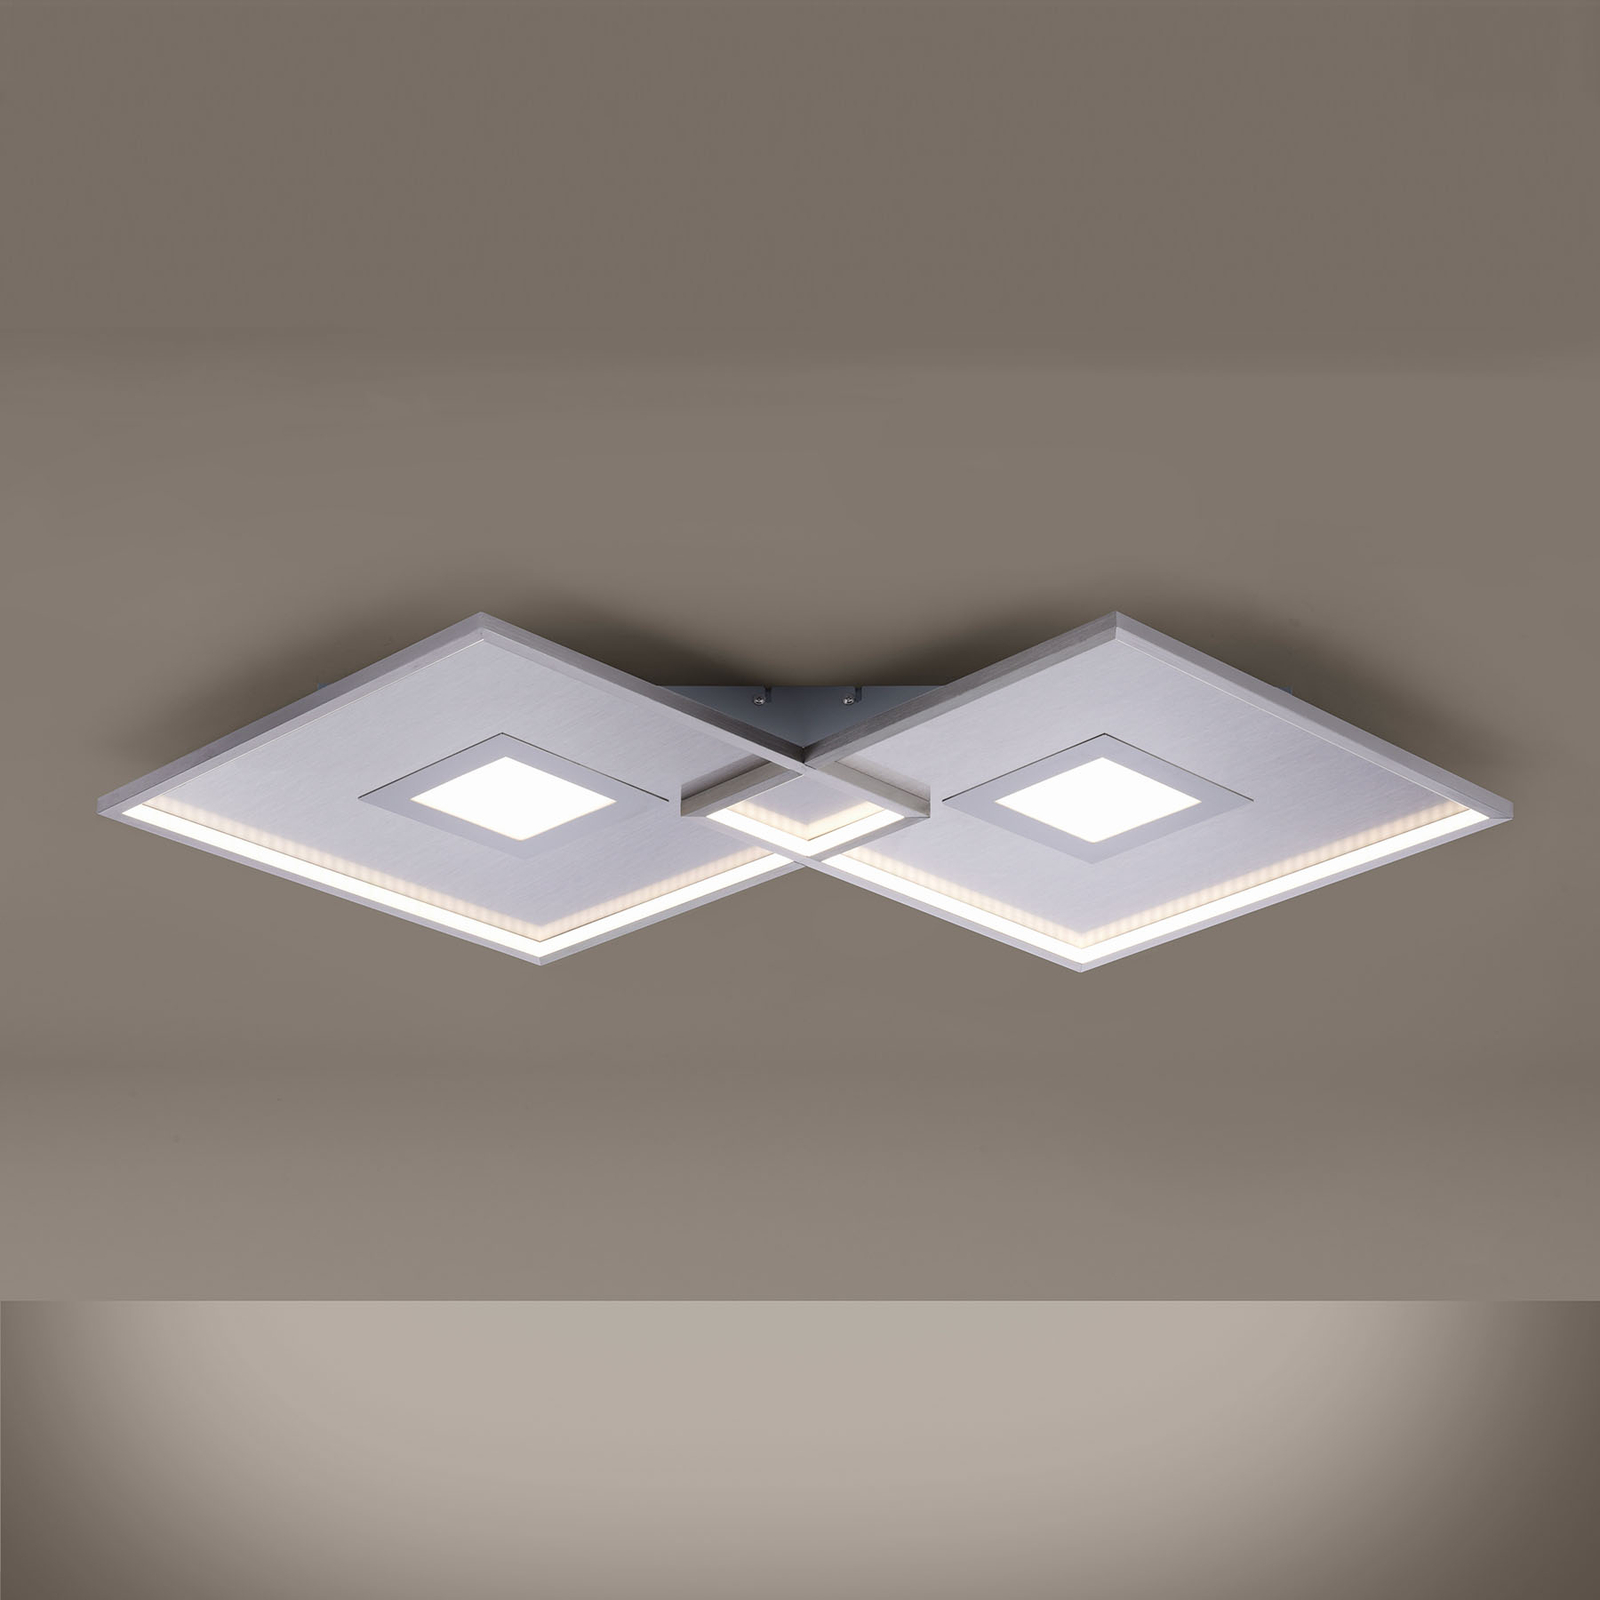 LED lámpa Amara, két négyzet alakú, ezüst